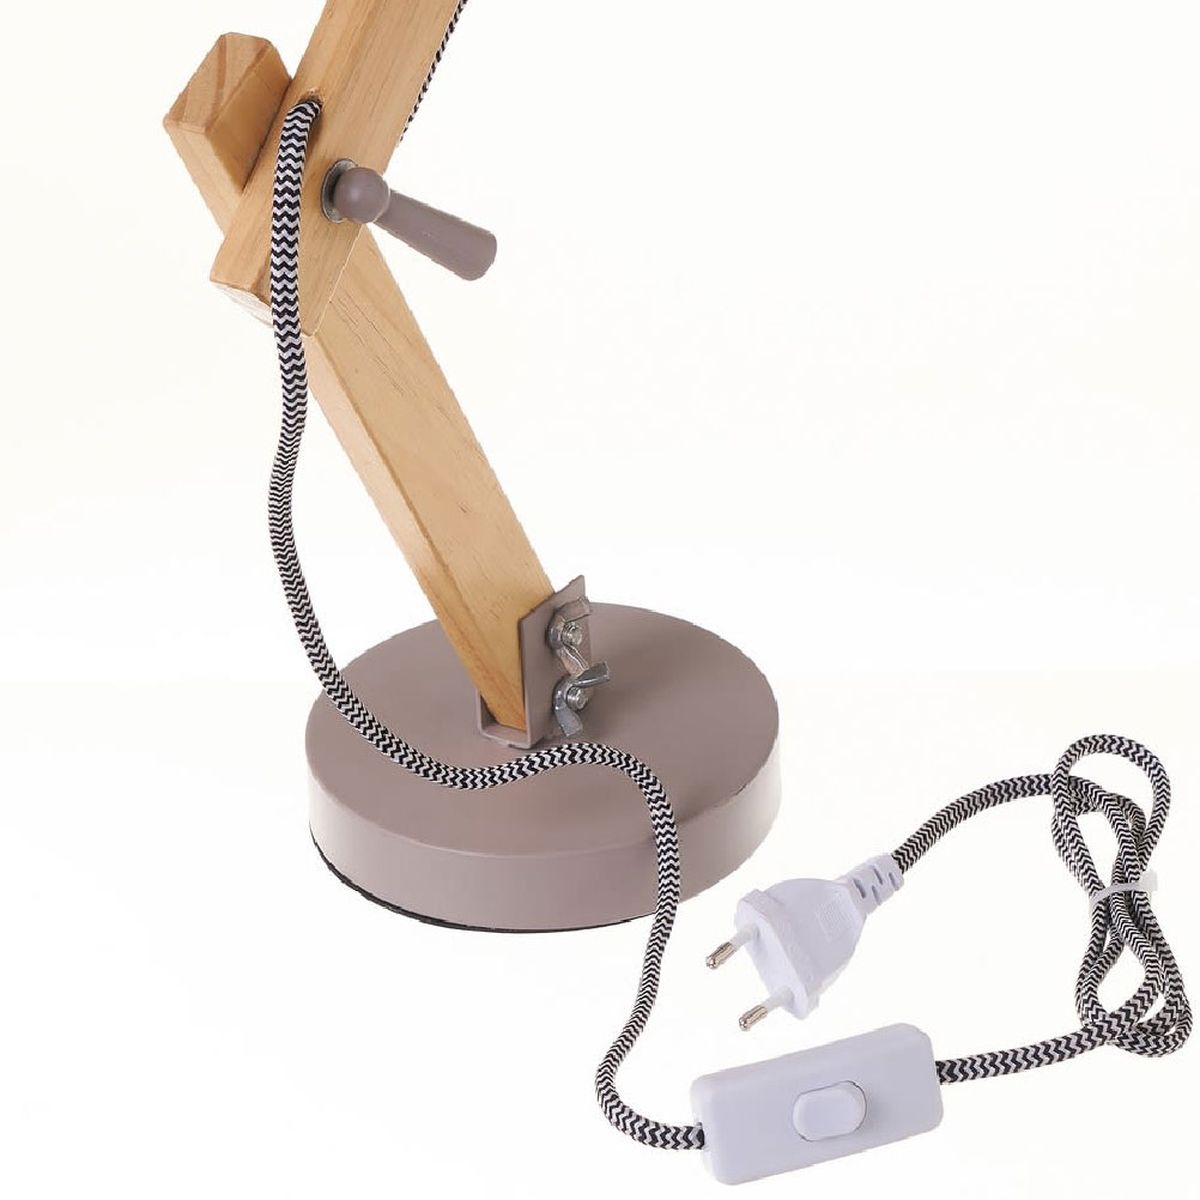 Gray metal and wood flexo lamp - 43 cm